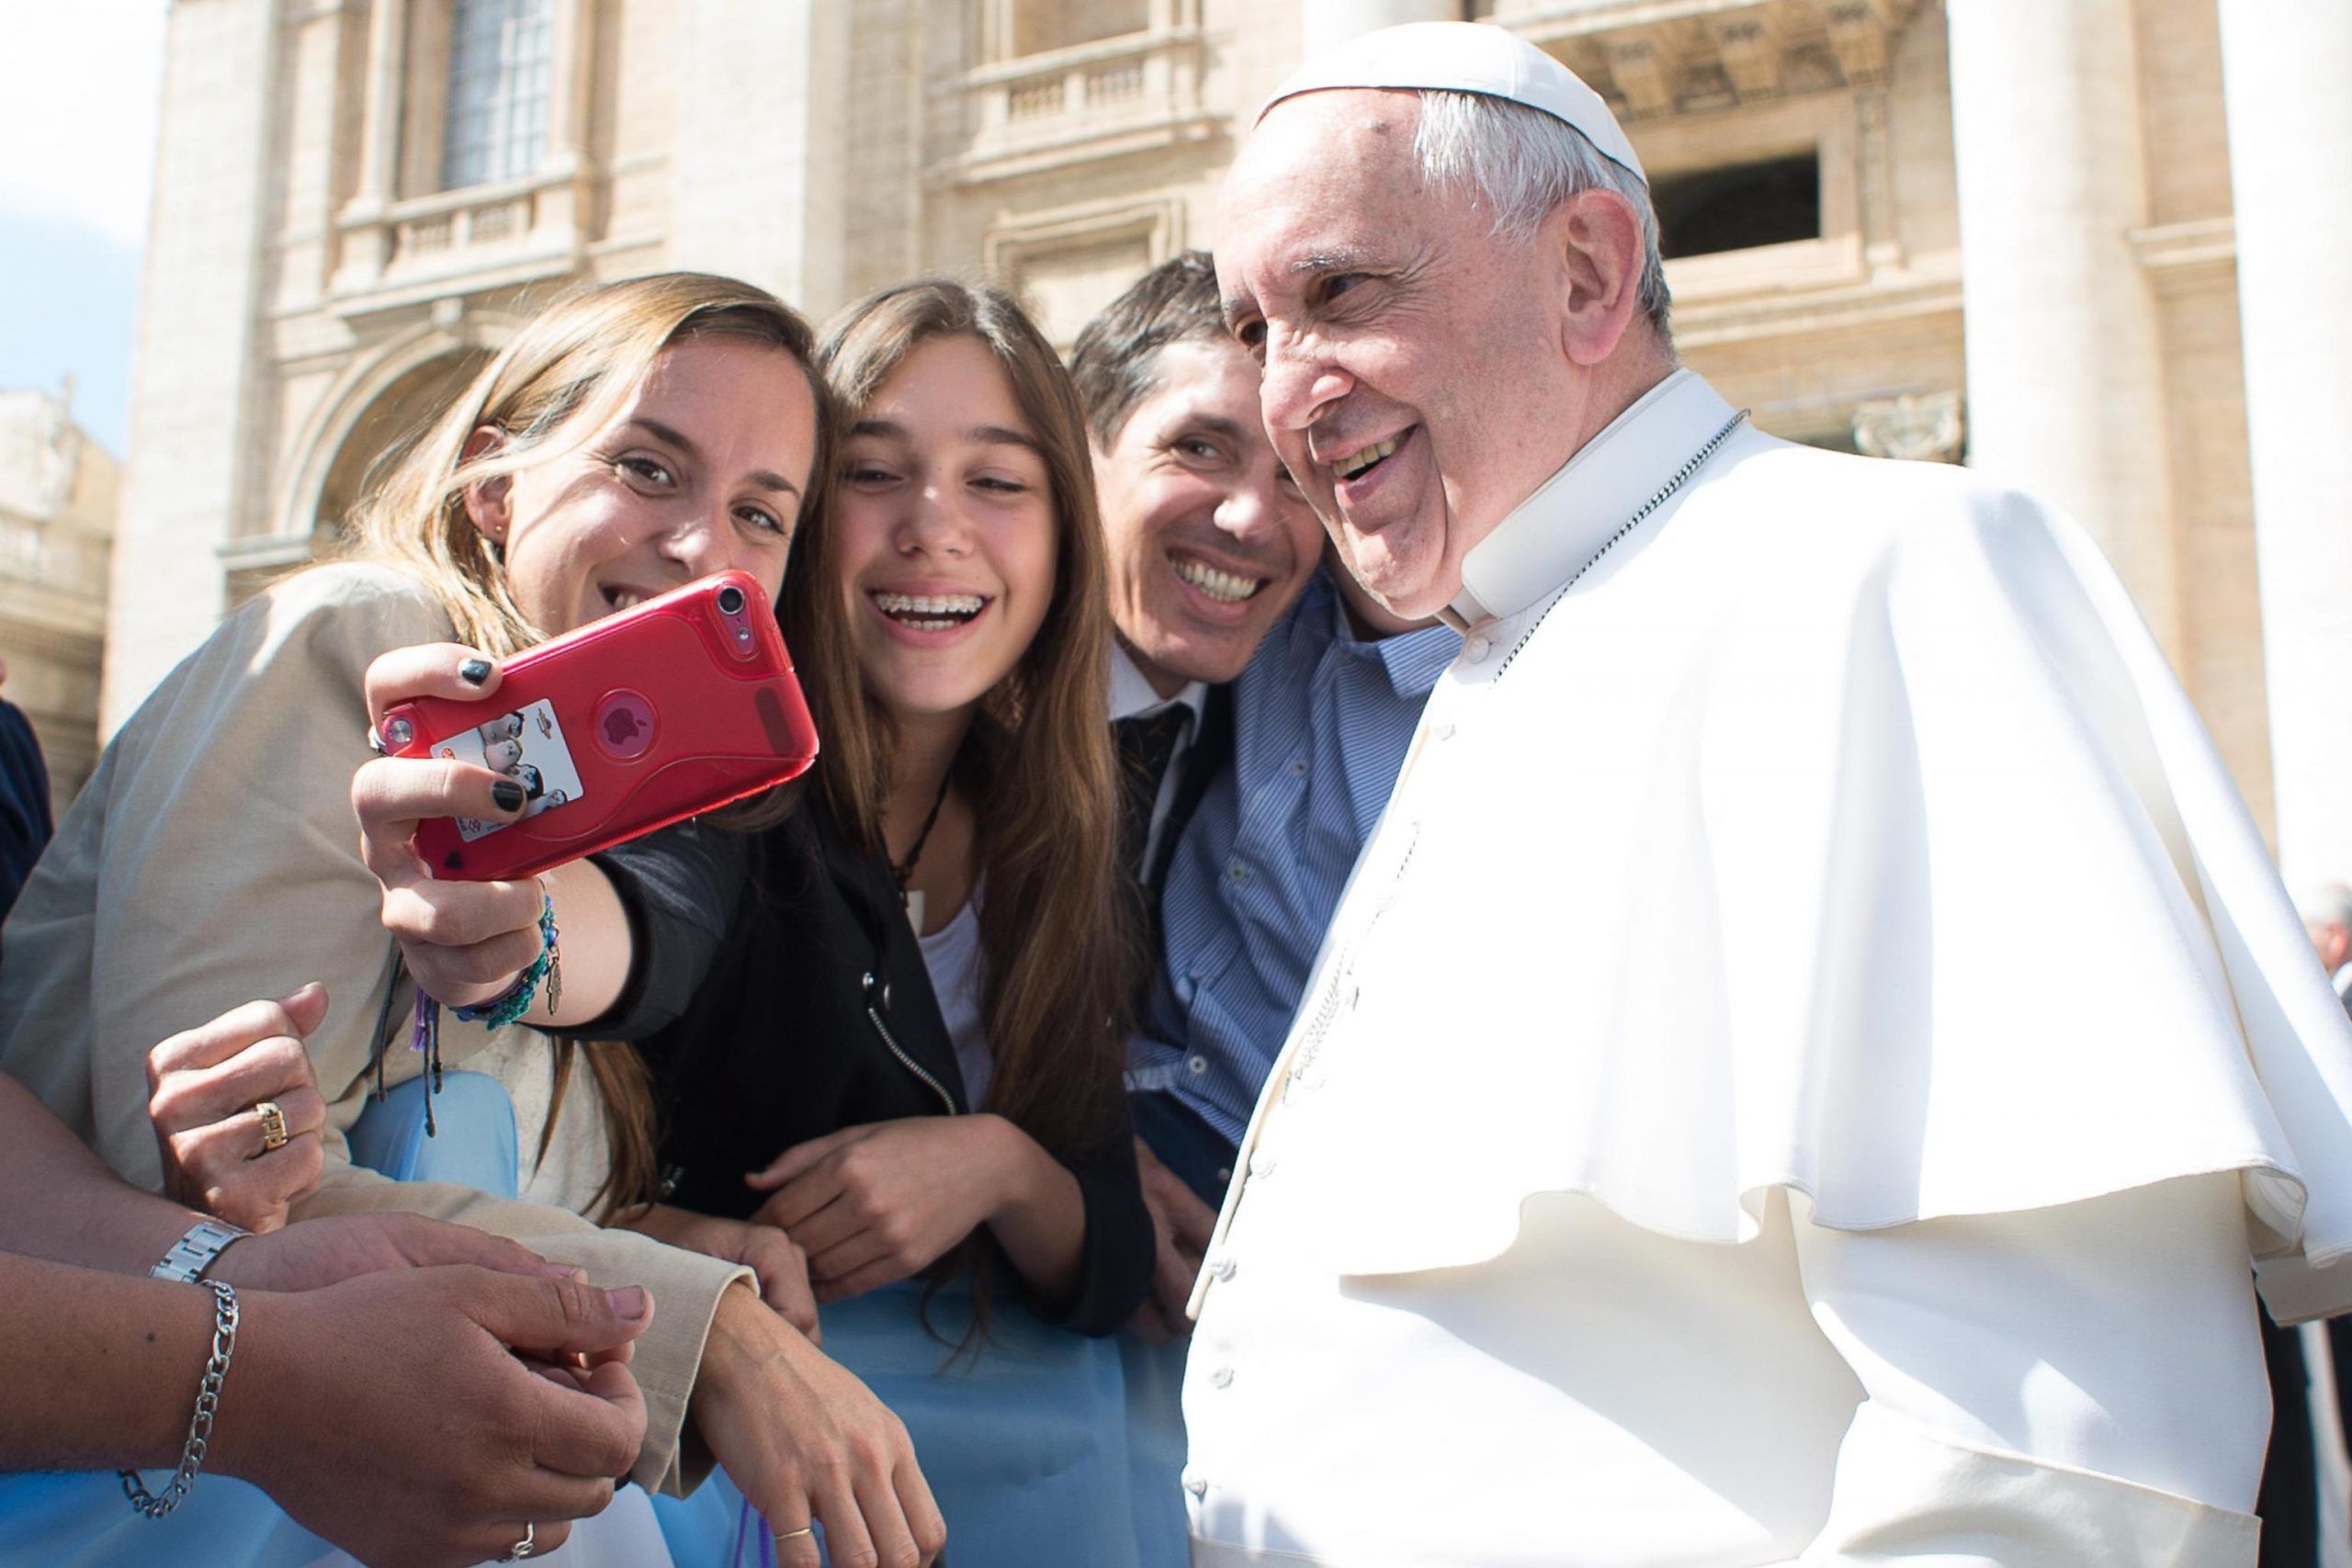 Papa Francesco preoccupato per i giovani: ‘Troppi selfie, non gli interessa stringermi la mano’